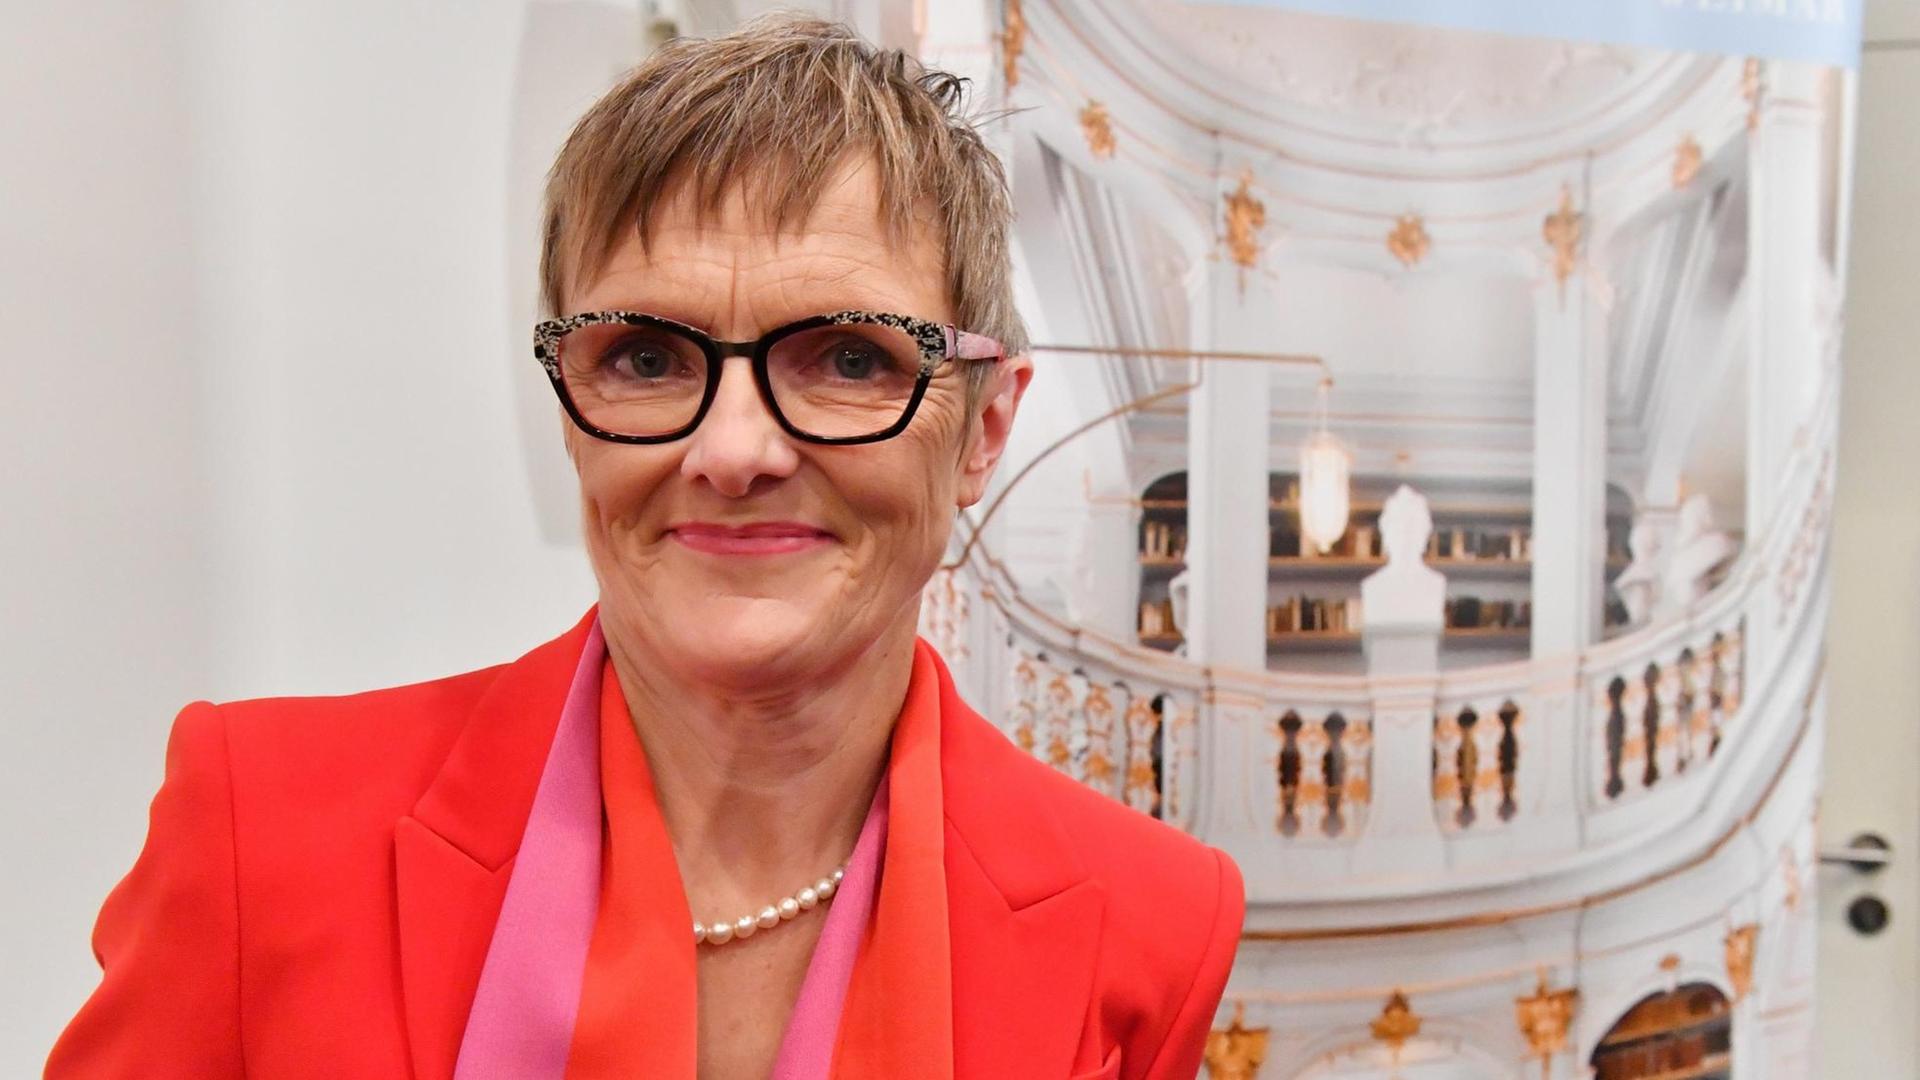 Ulrike Lorenz, im November 2018 noch Mannheimer Kunsthallen-Chefin, wird auf einer Pressekonferenz als erste Frau an der Spitze der Klassik Stiftung Weimar vorgestellt. Der Stiftungsrat wählte die 55-Jährige am selben Tag einstimmig zur neuen Präsidentin.